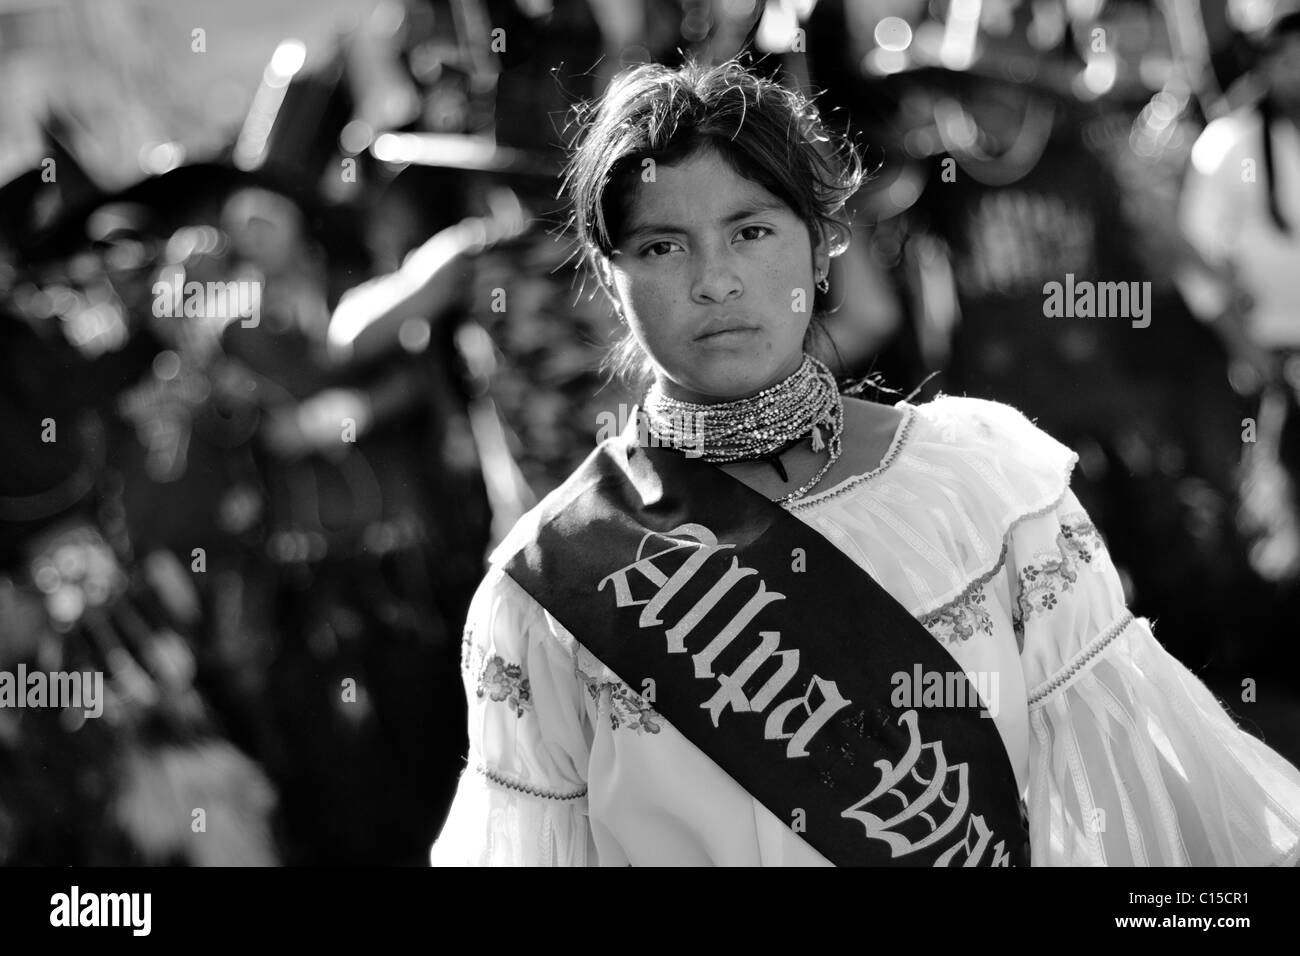 Ein indisches Mädchen, ein Beauty-Contest-Gewinner geht in die Prozession während der Festlichkeiten Inti Raymi (San Juan) in Ecuador. Stockfoto